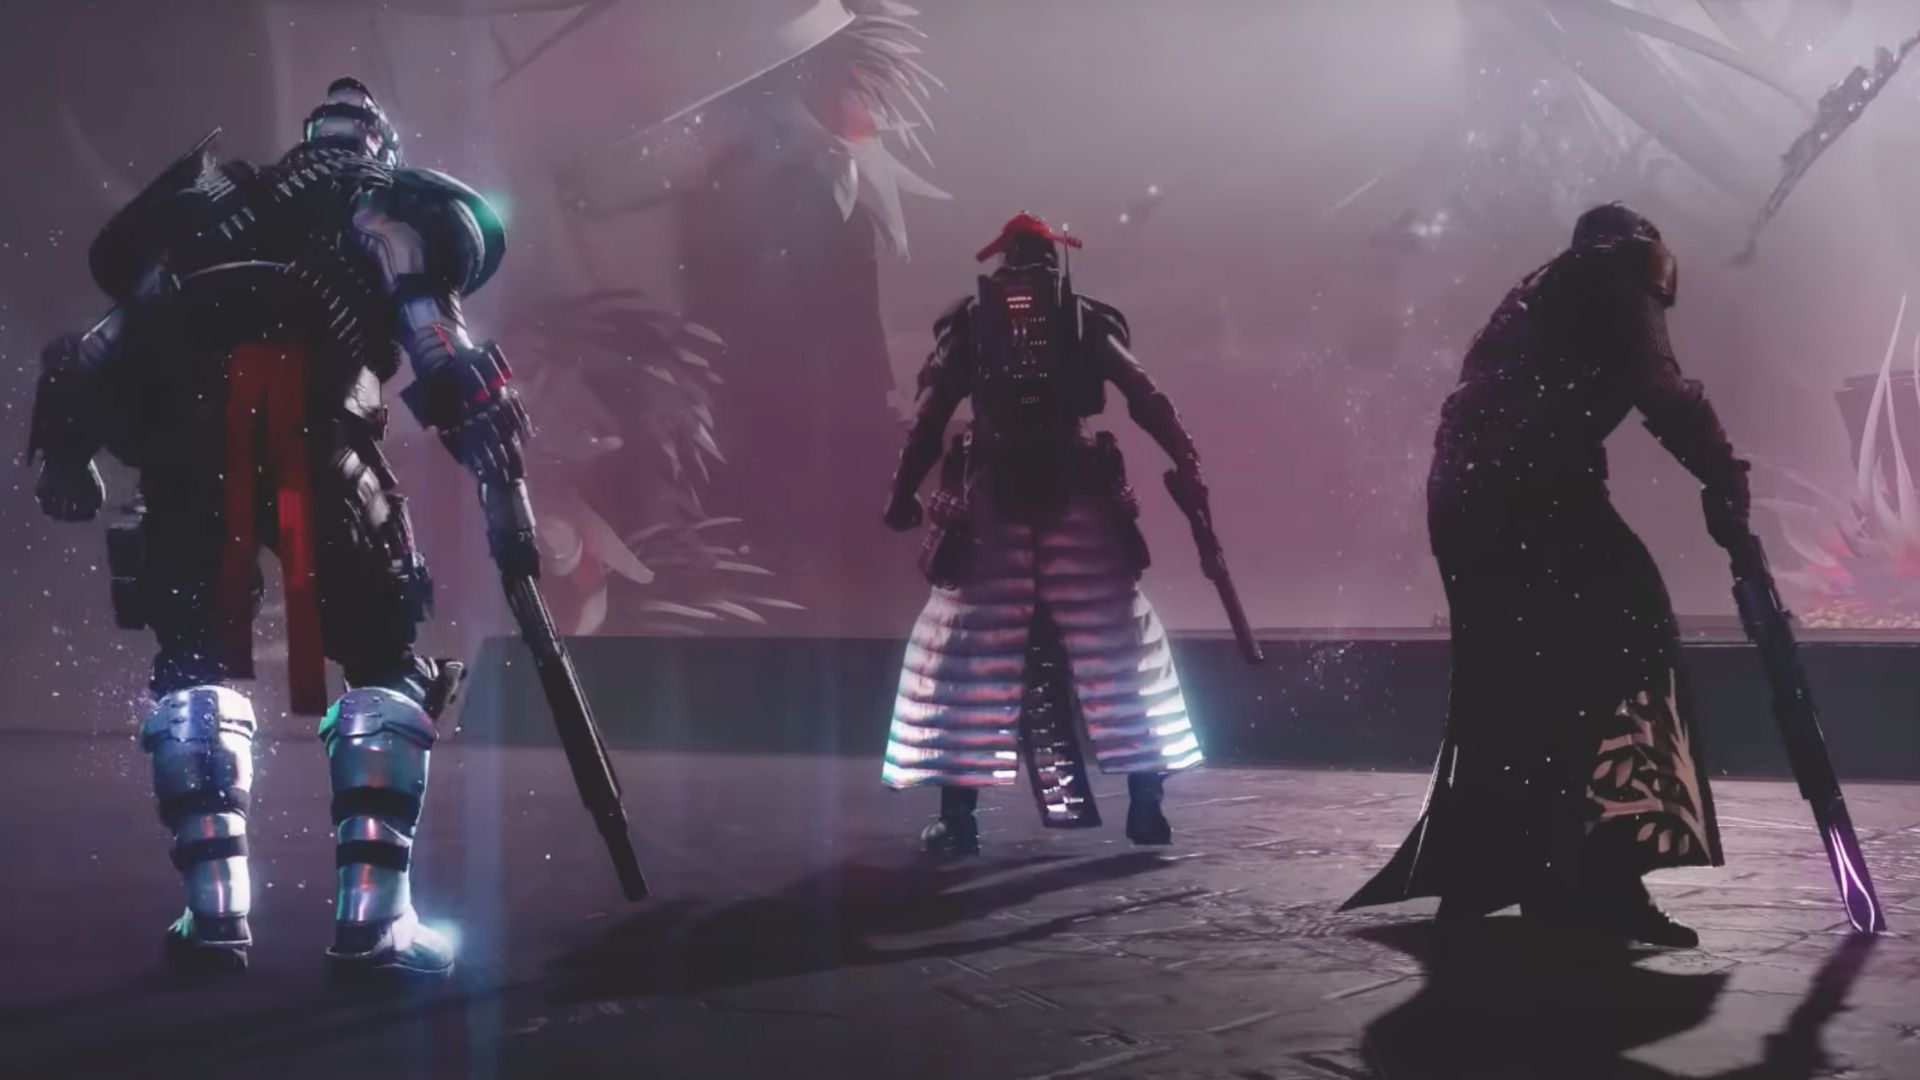 Destiny 2 Lightfall - Root Of Nightmares Raid Day One/Contest Emblem Carry